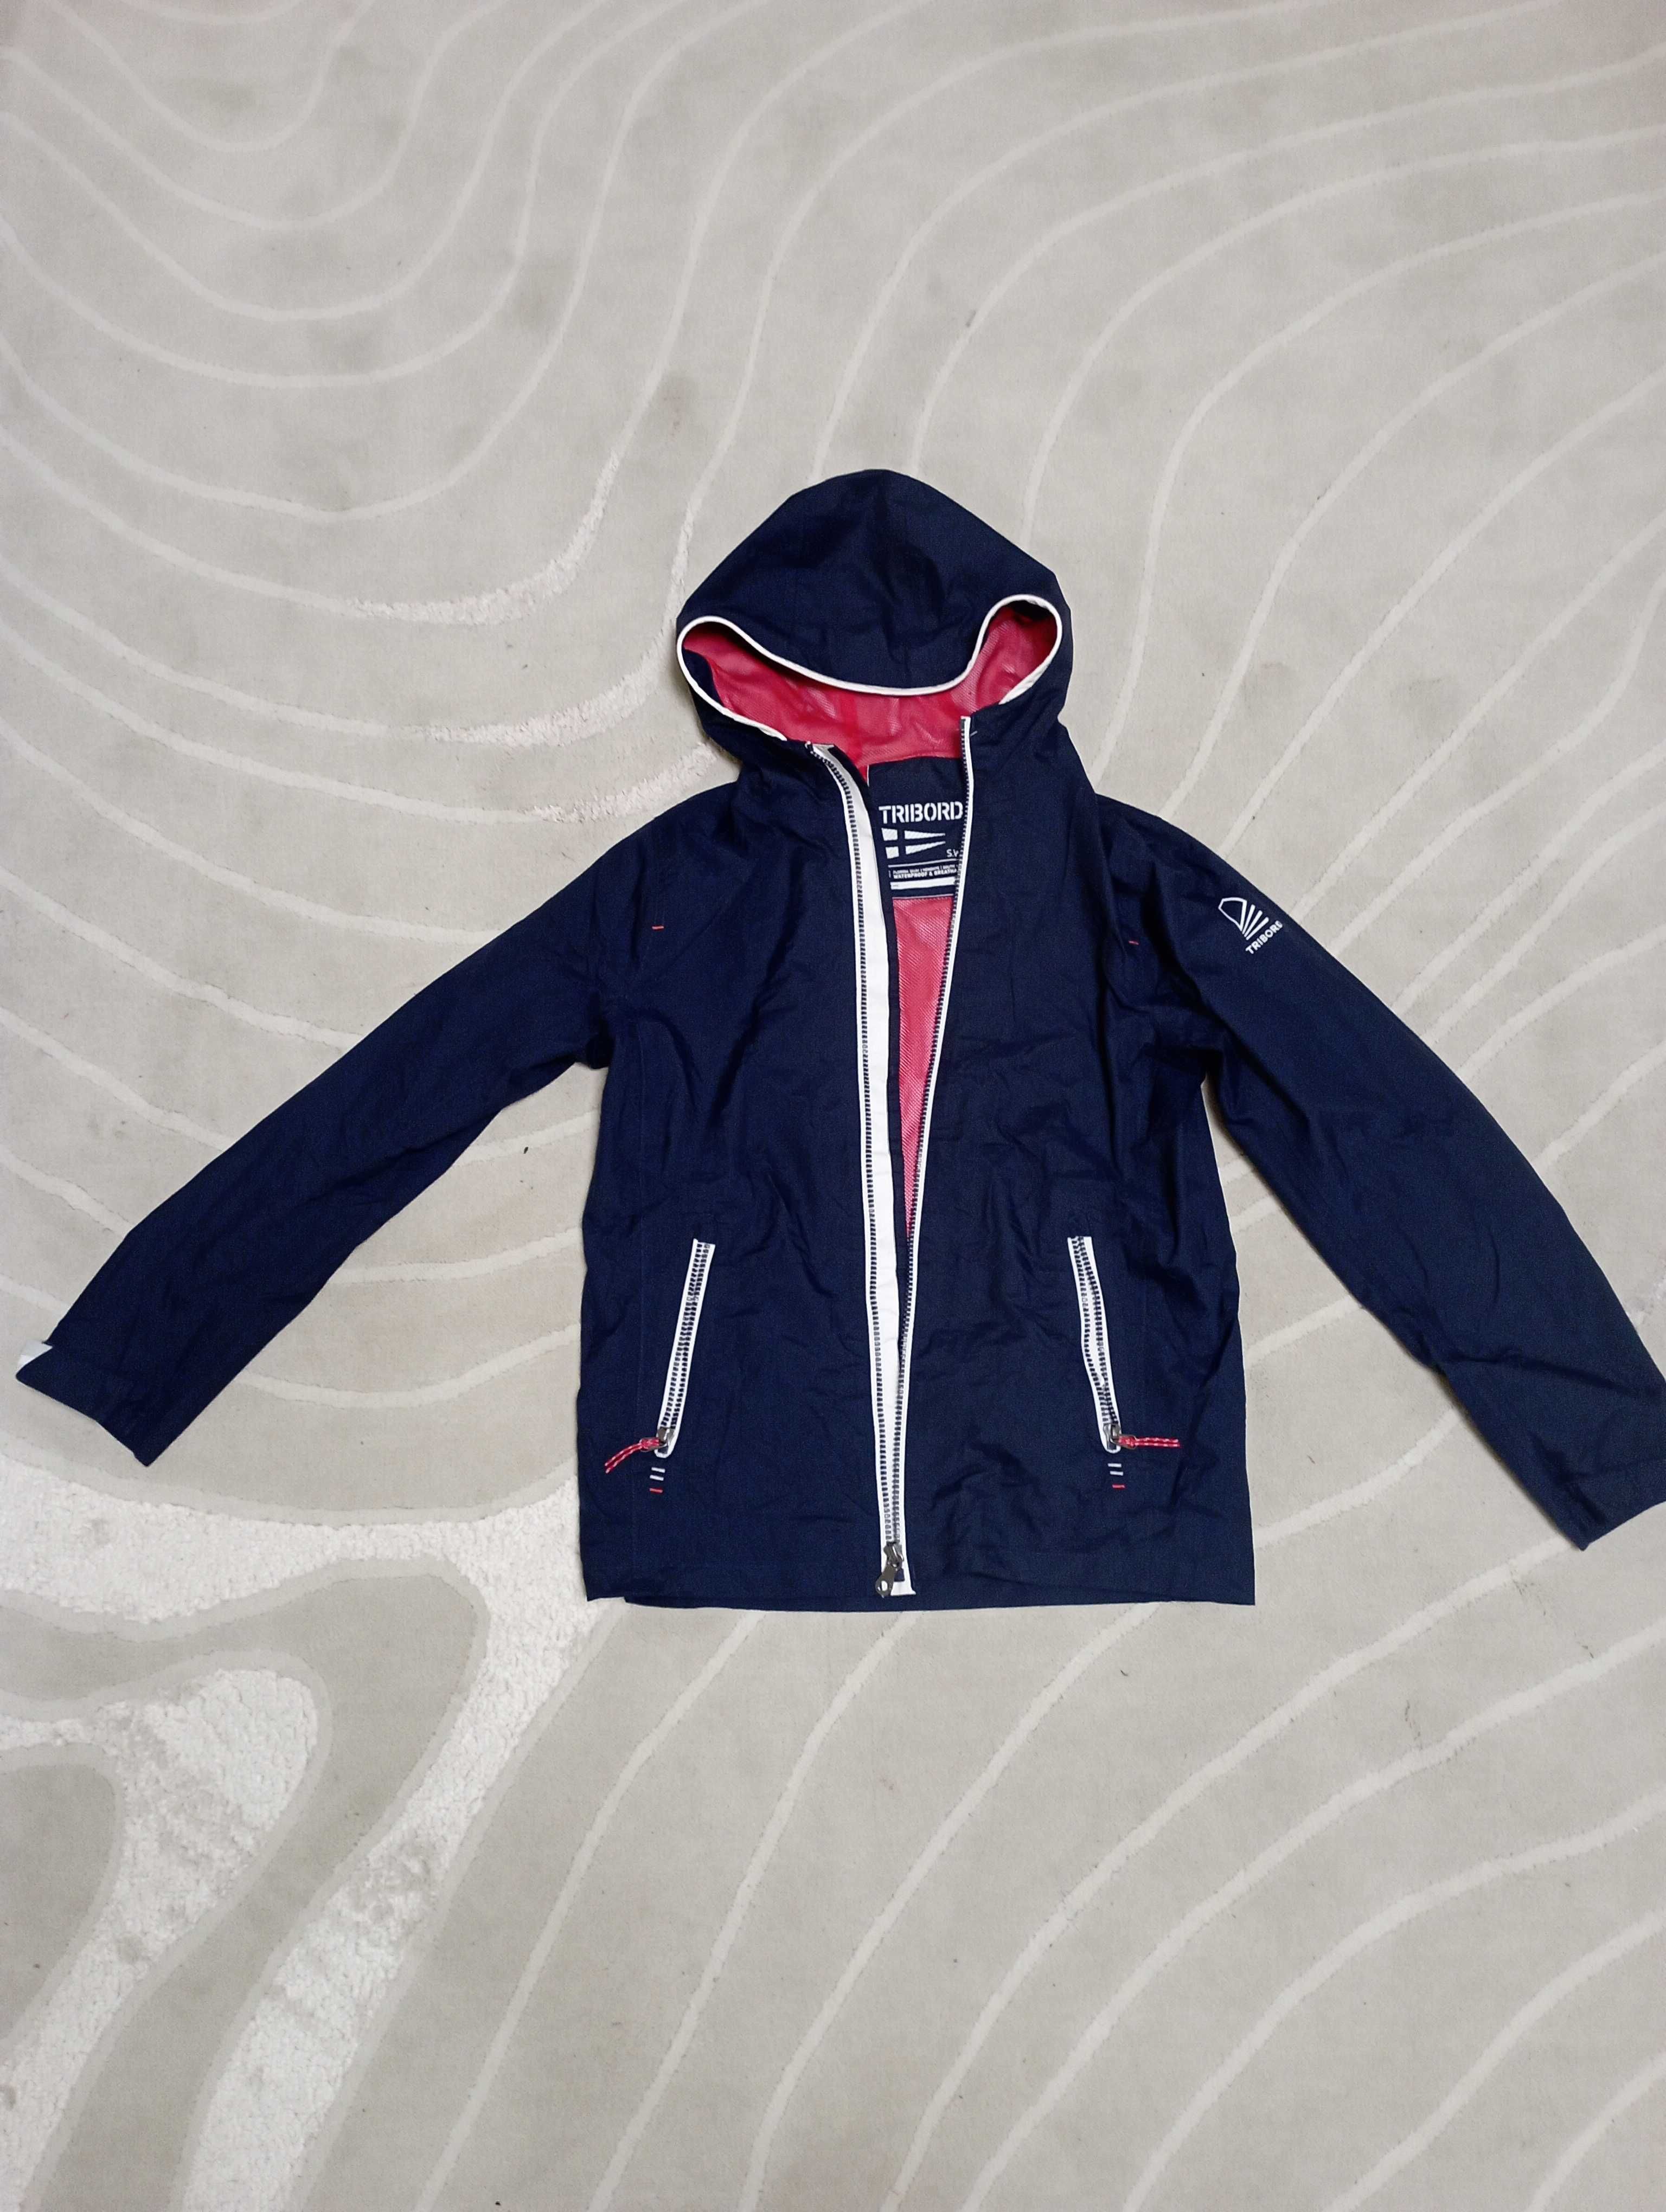 Куртка дитяча Tribord 100 для вітрильного спорту, водонепроникна.